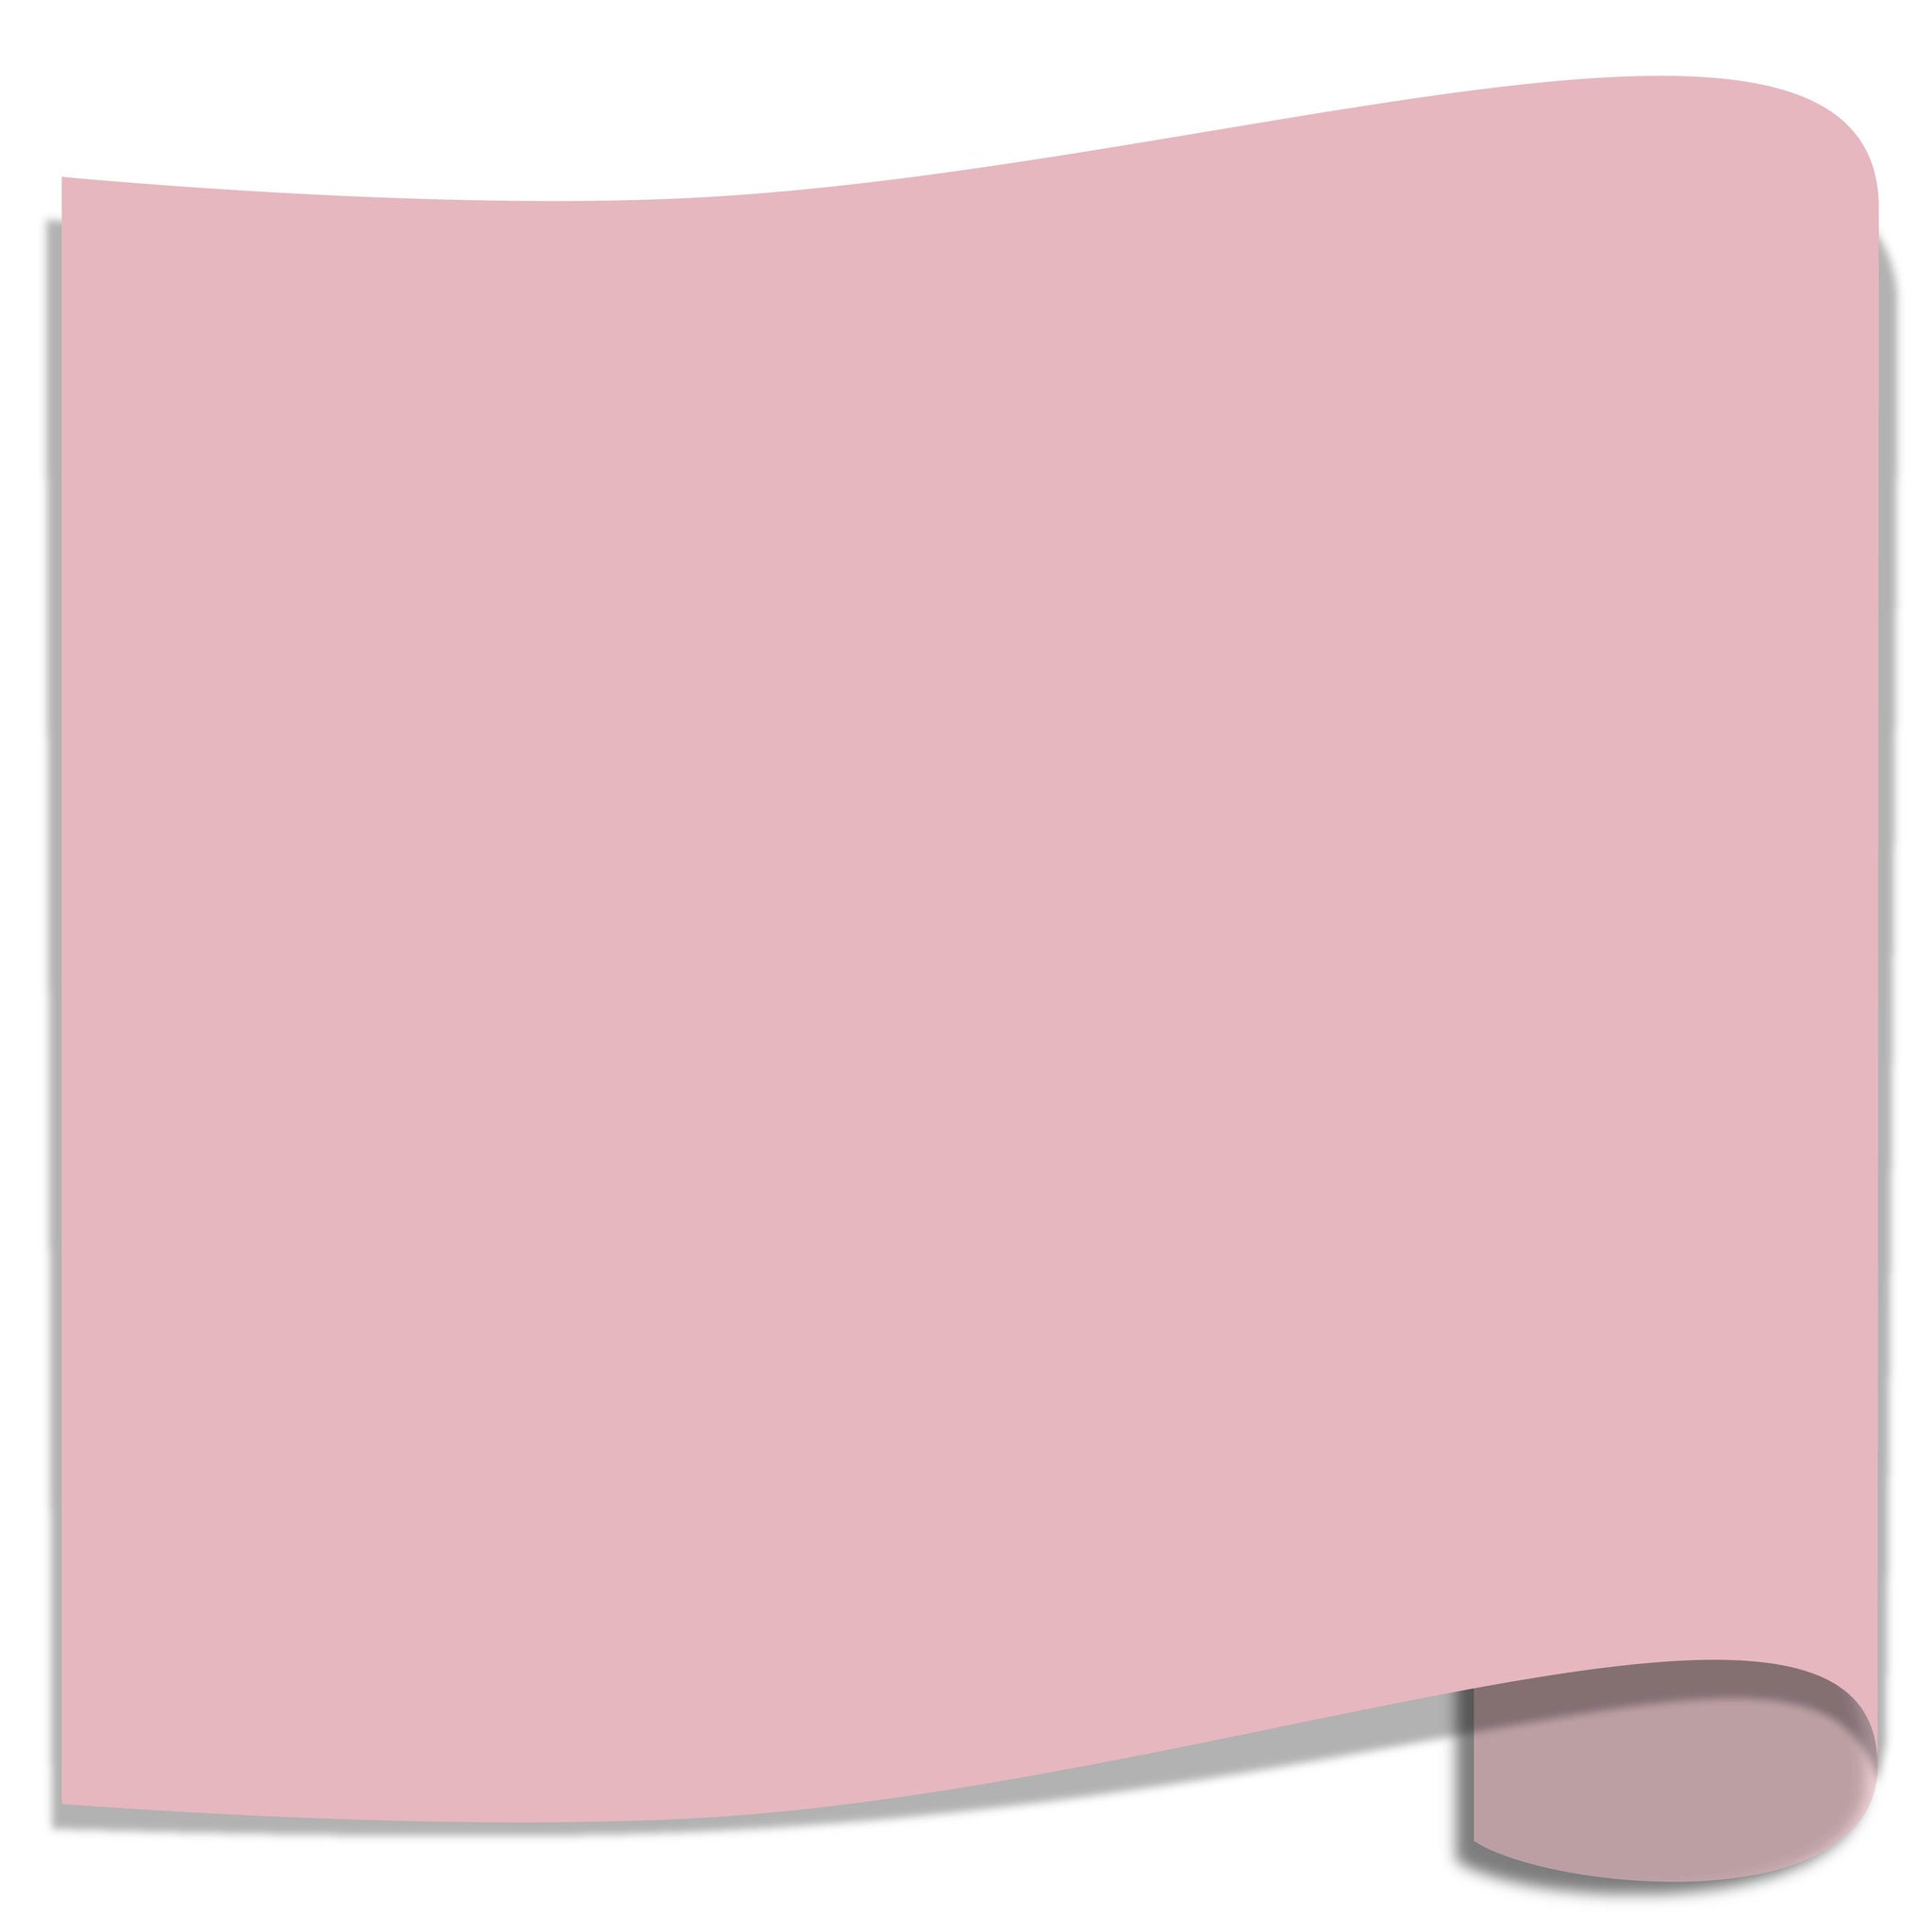 Siser EasyWeed Heat Transfer Vinyl HTV - Fluorescent Pink Swing Design